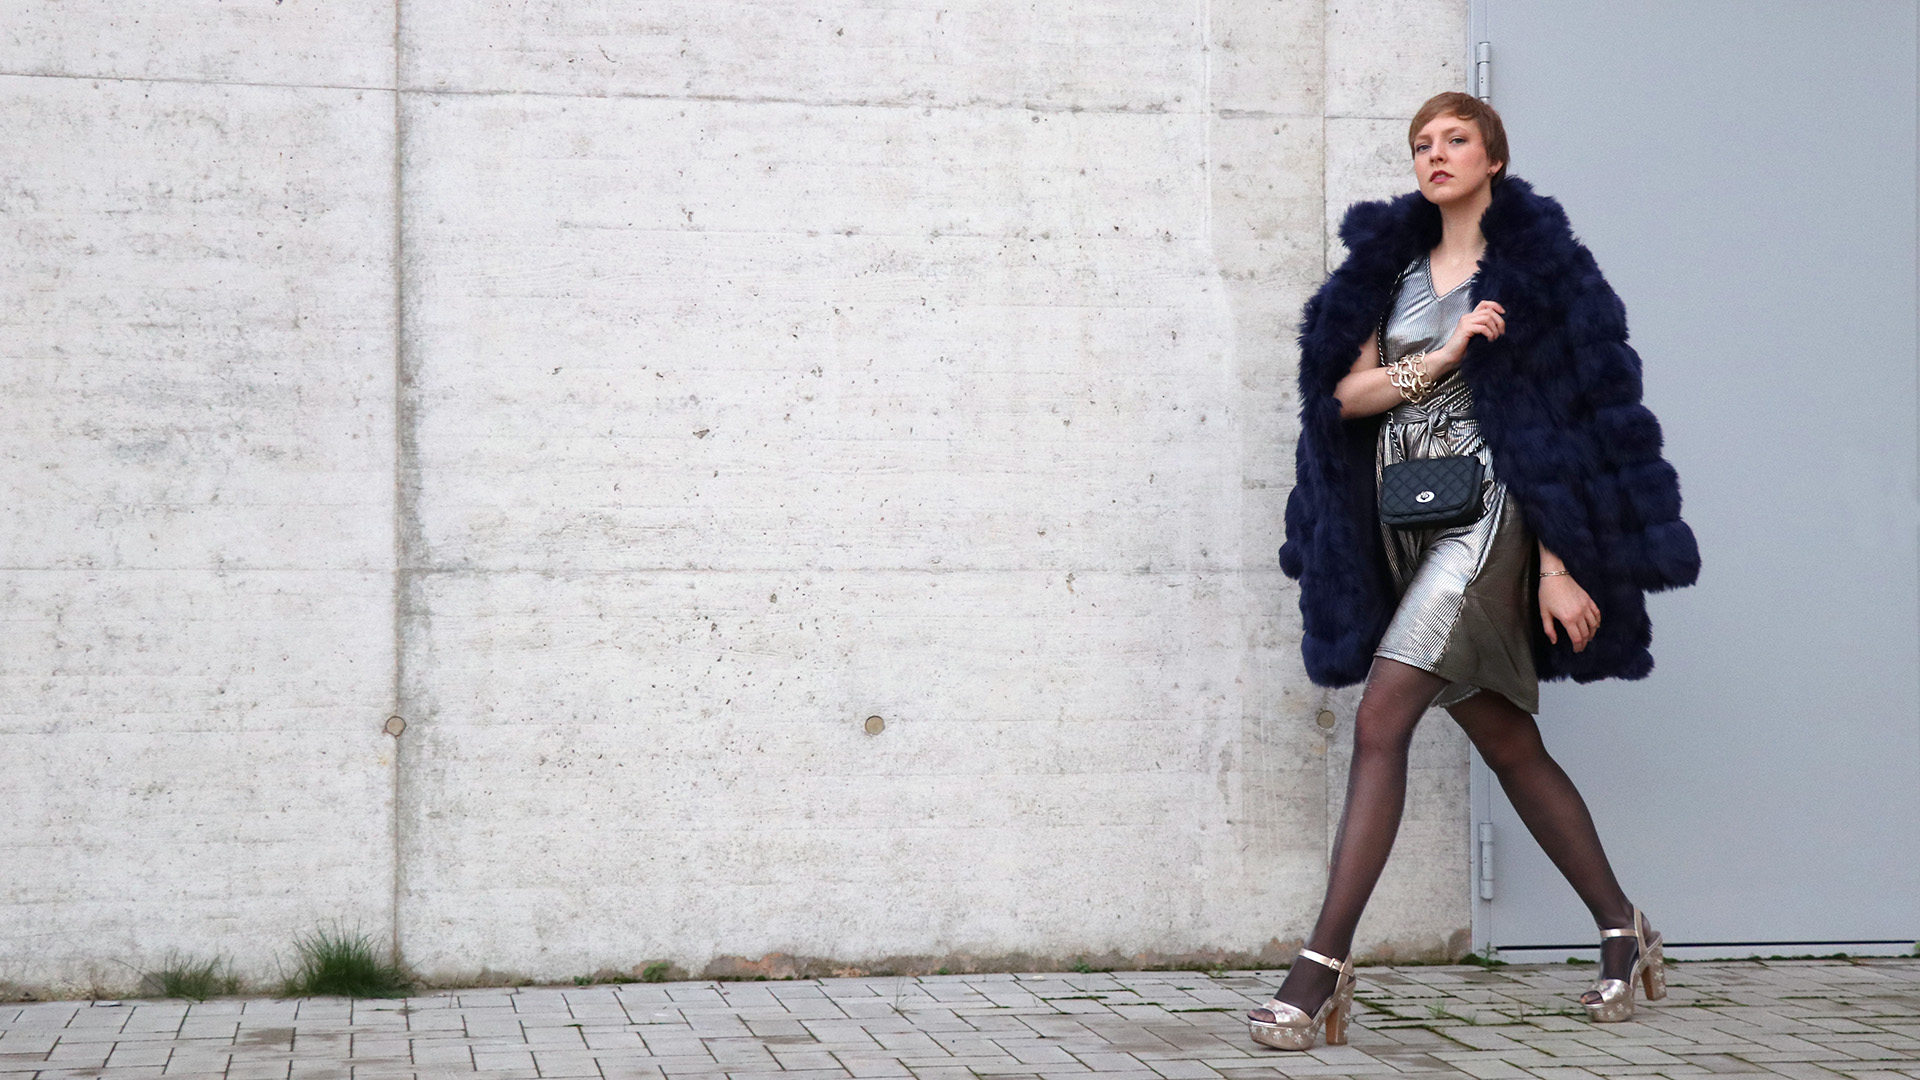 Frau mit dunkelblauem Kunstfellmantel und bronze-metallic Kleid läuft an einer Wand entlang.